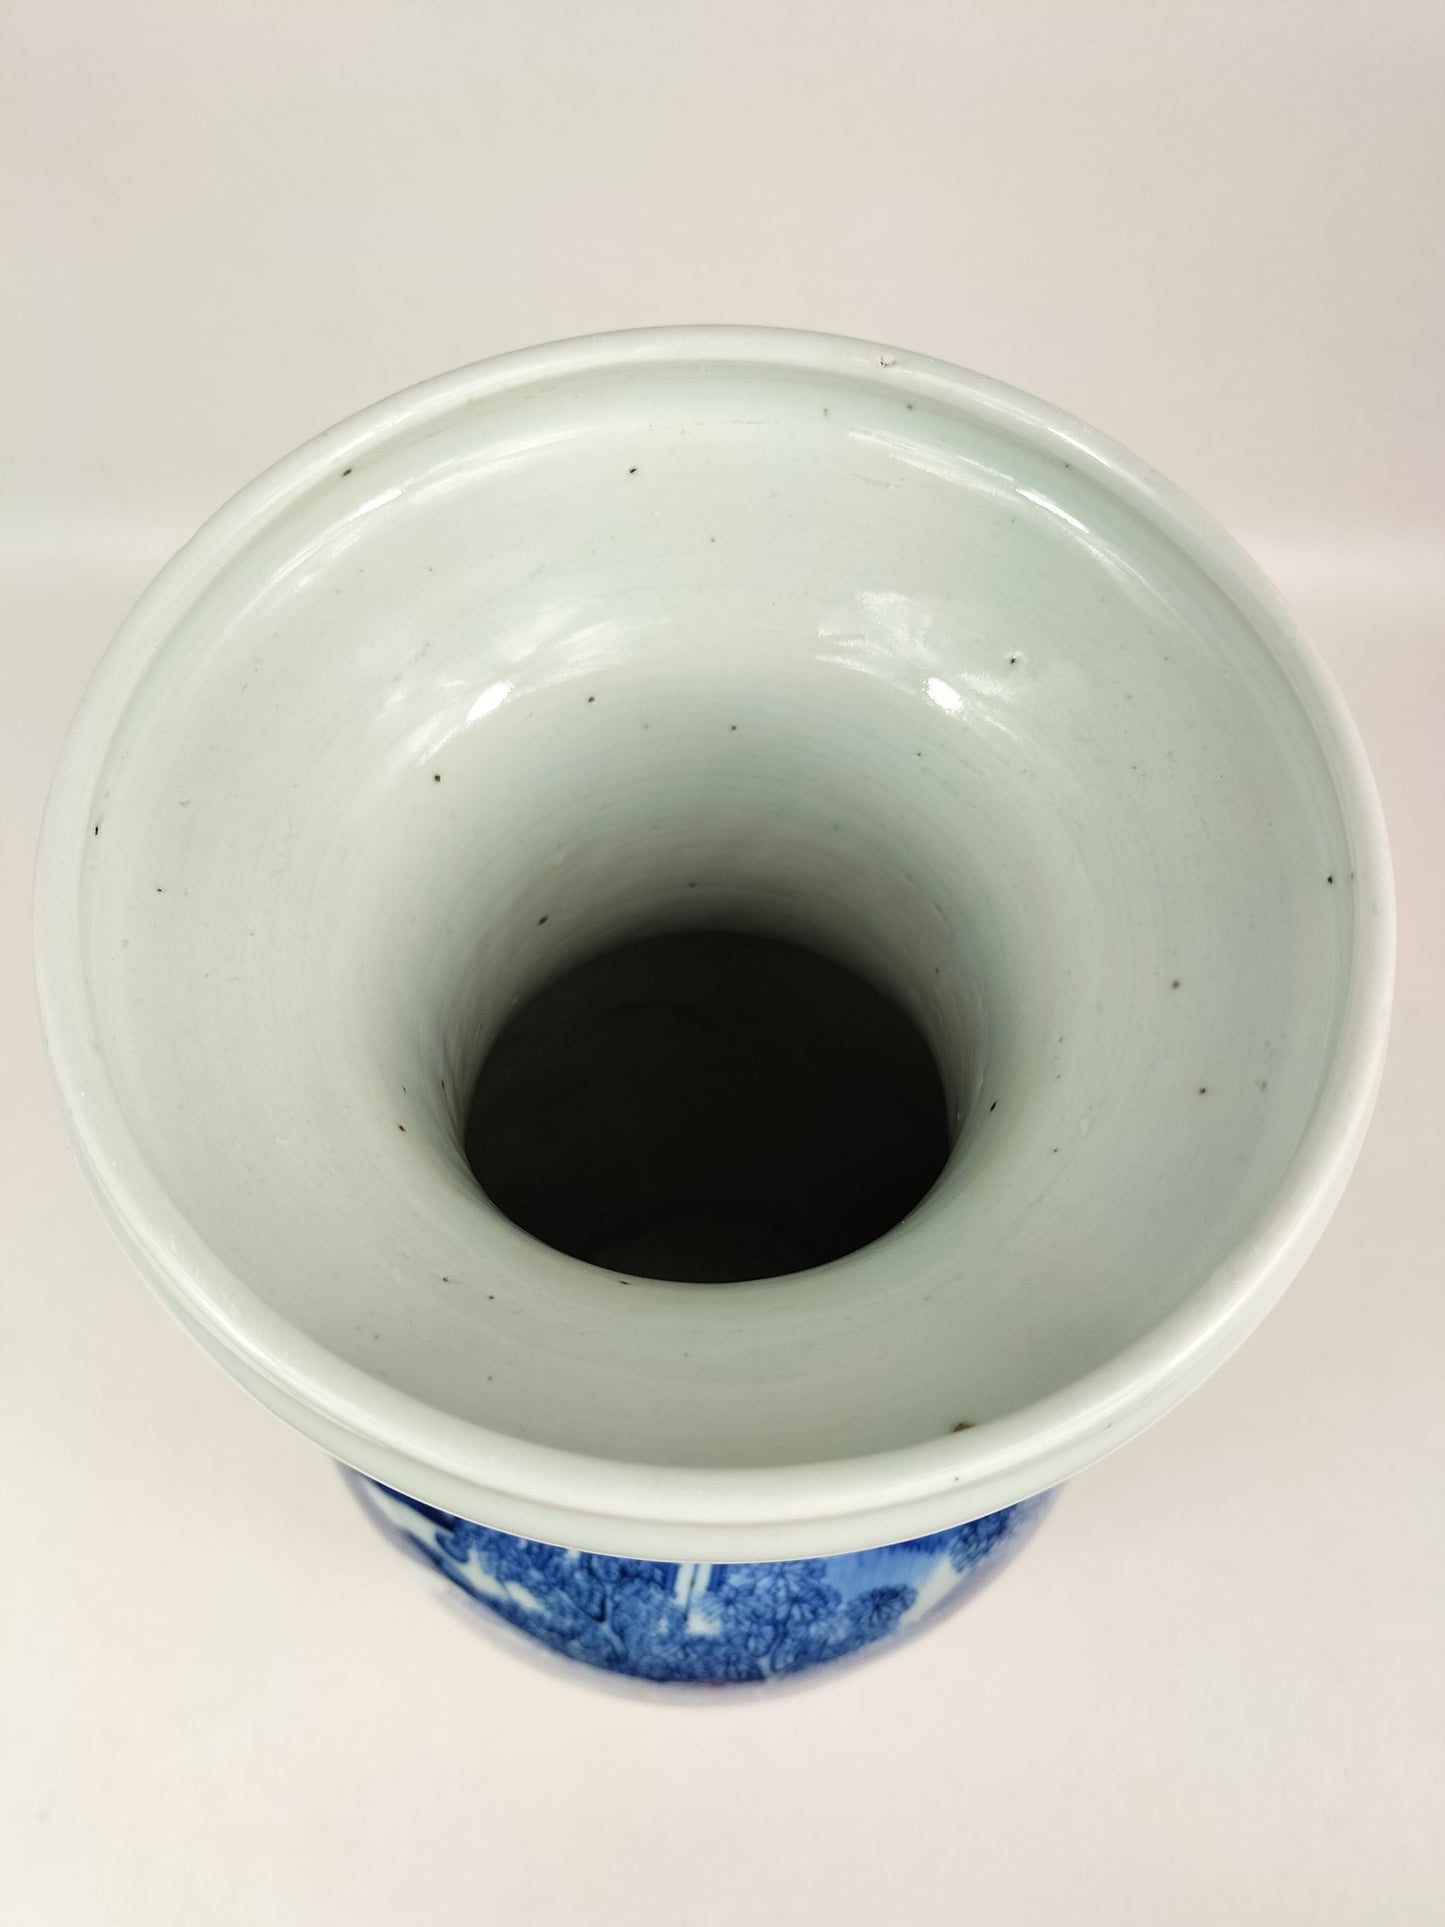 Antigo vaso chinês decorado com paisagem // Azul e branco - Dinastia Qing - século XIX